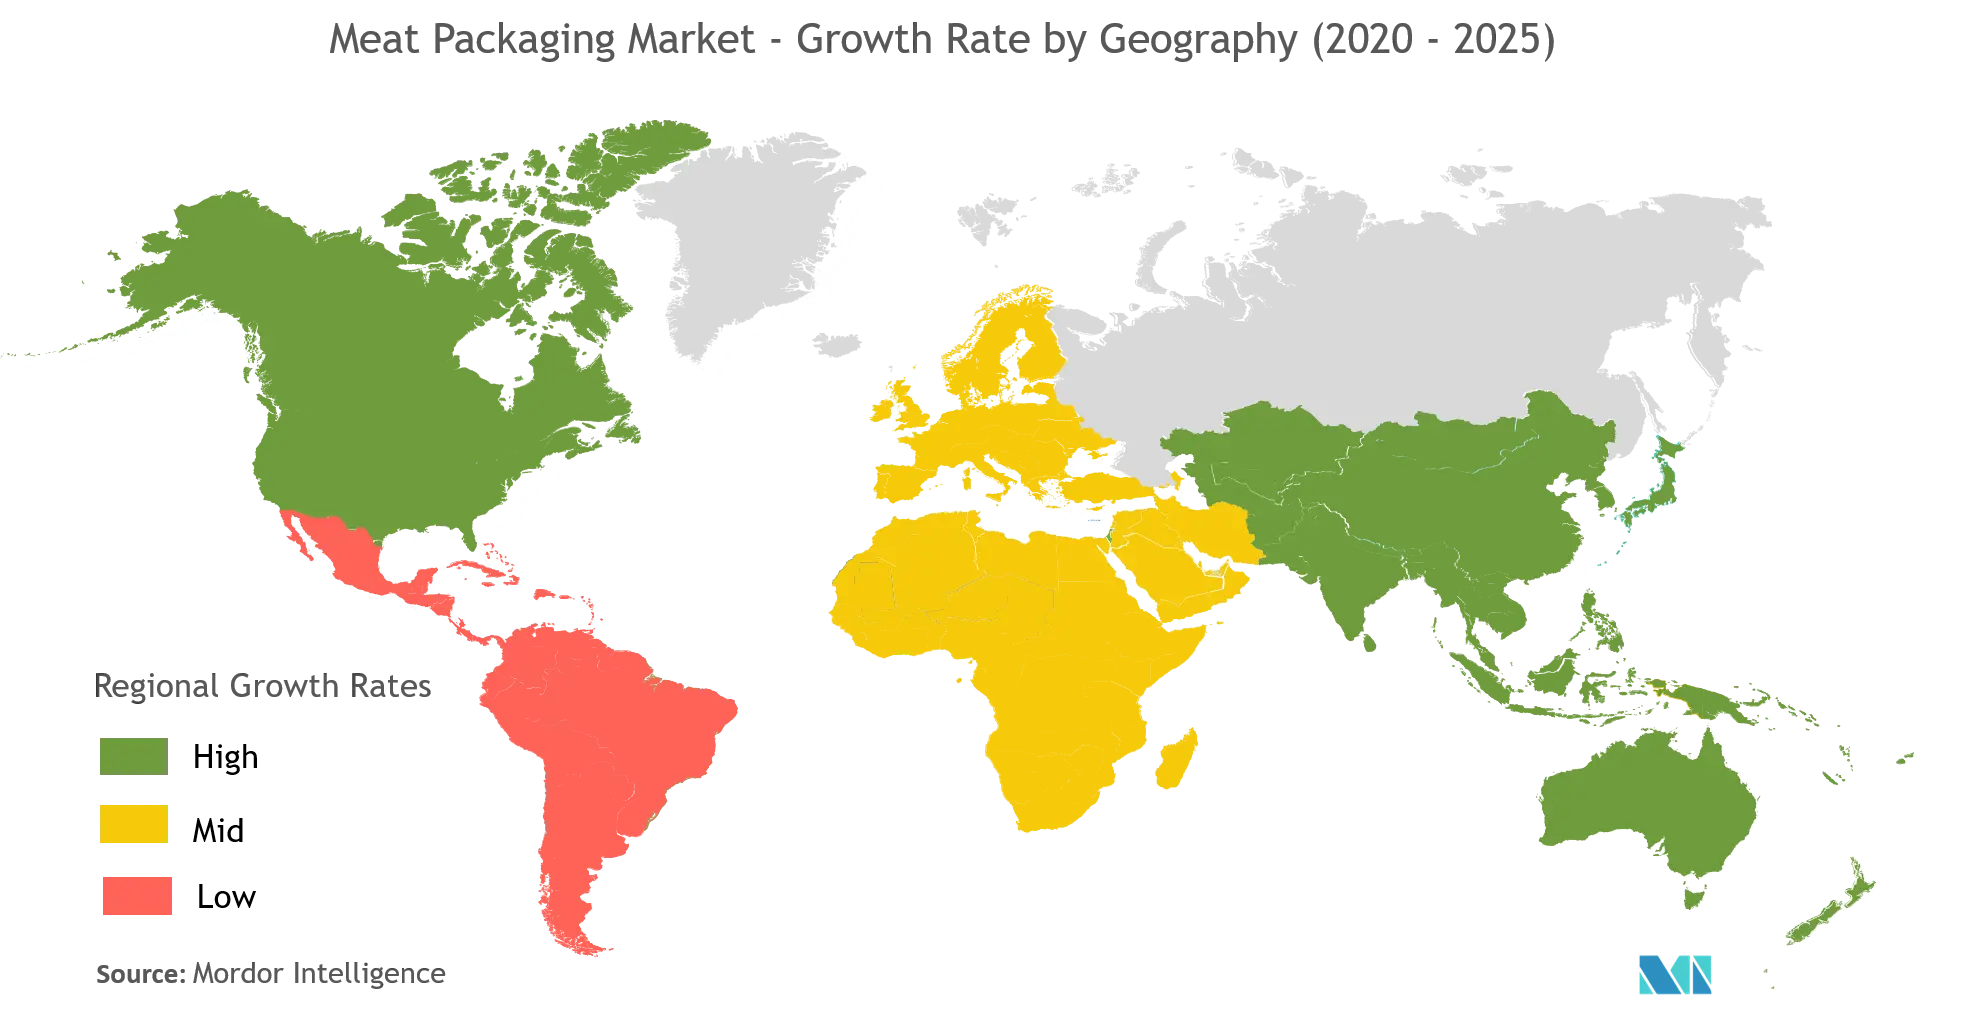 Thị trường bao bì thịt - Tốc độ tăng trưởng theo địa lý (2020 - 2025)